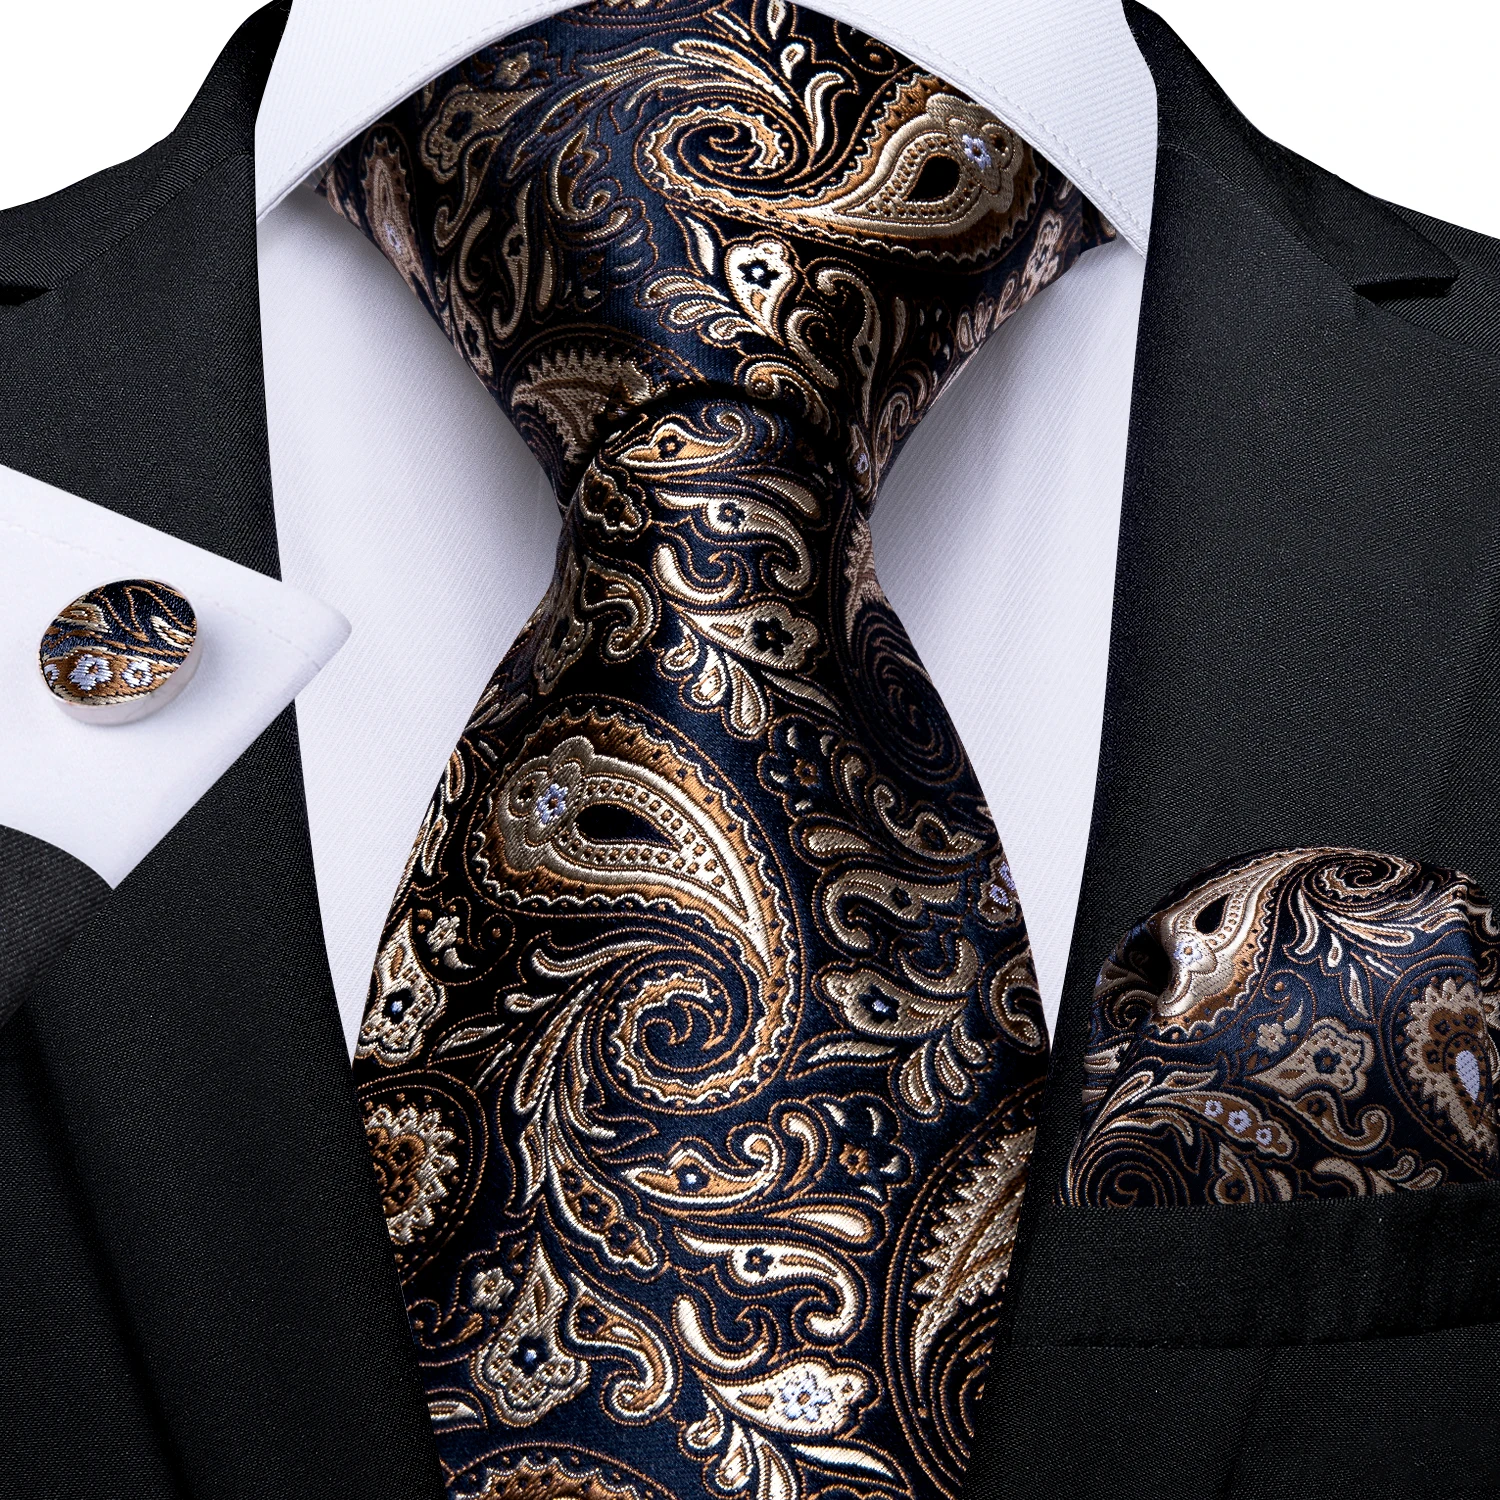 dibangu мужской галстук шелковый красный синий однотонный свадебный галстук карманные квадратные запонки зажим набор пейсли желтый Мужской галстук с золотыми и синими Пейсли, Свадебный галстук для мужчин, Hanky, запонки, Шелковый мужской галстук, вечерние, деловые, модные, DiBanGu, дизайнерские, MJ-7249